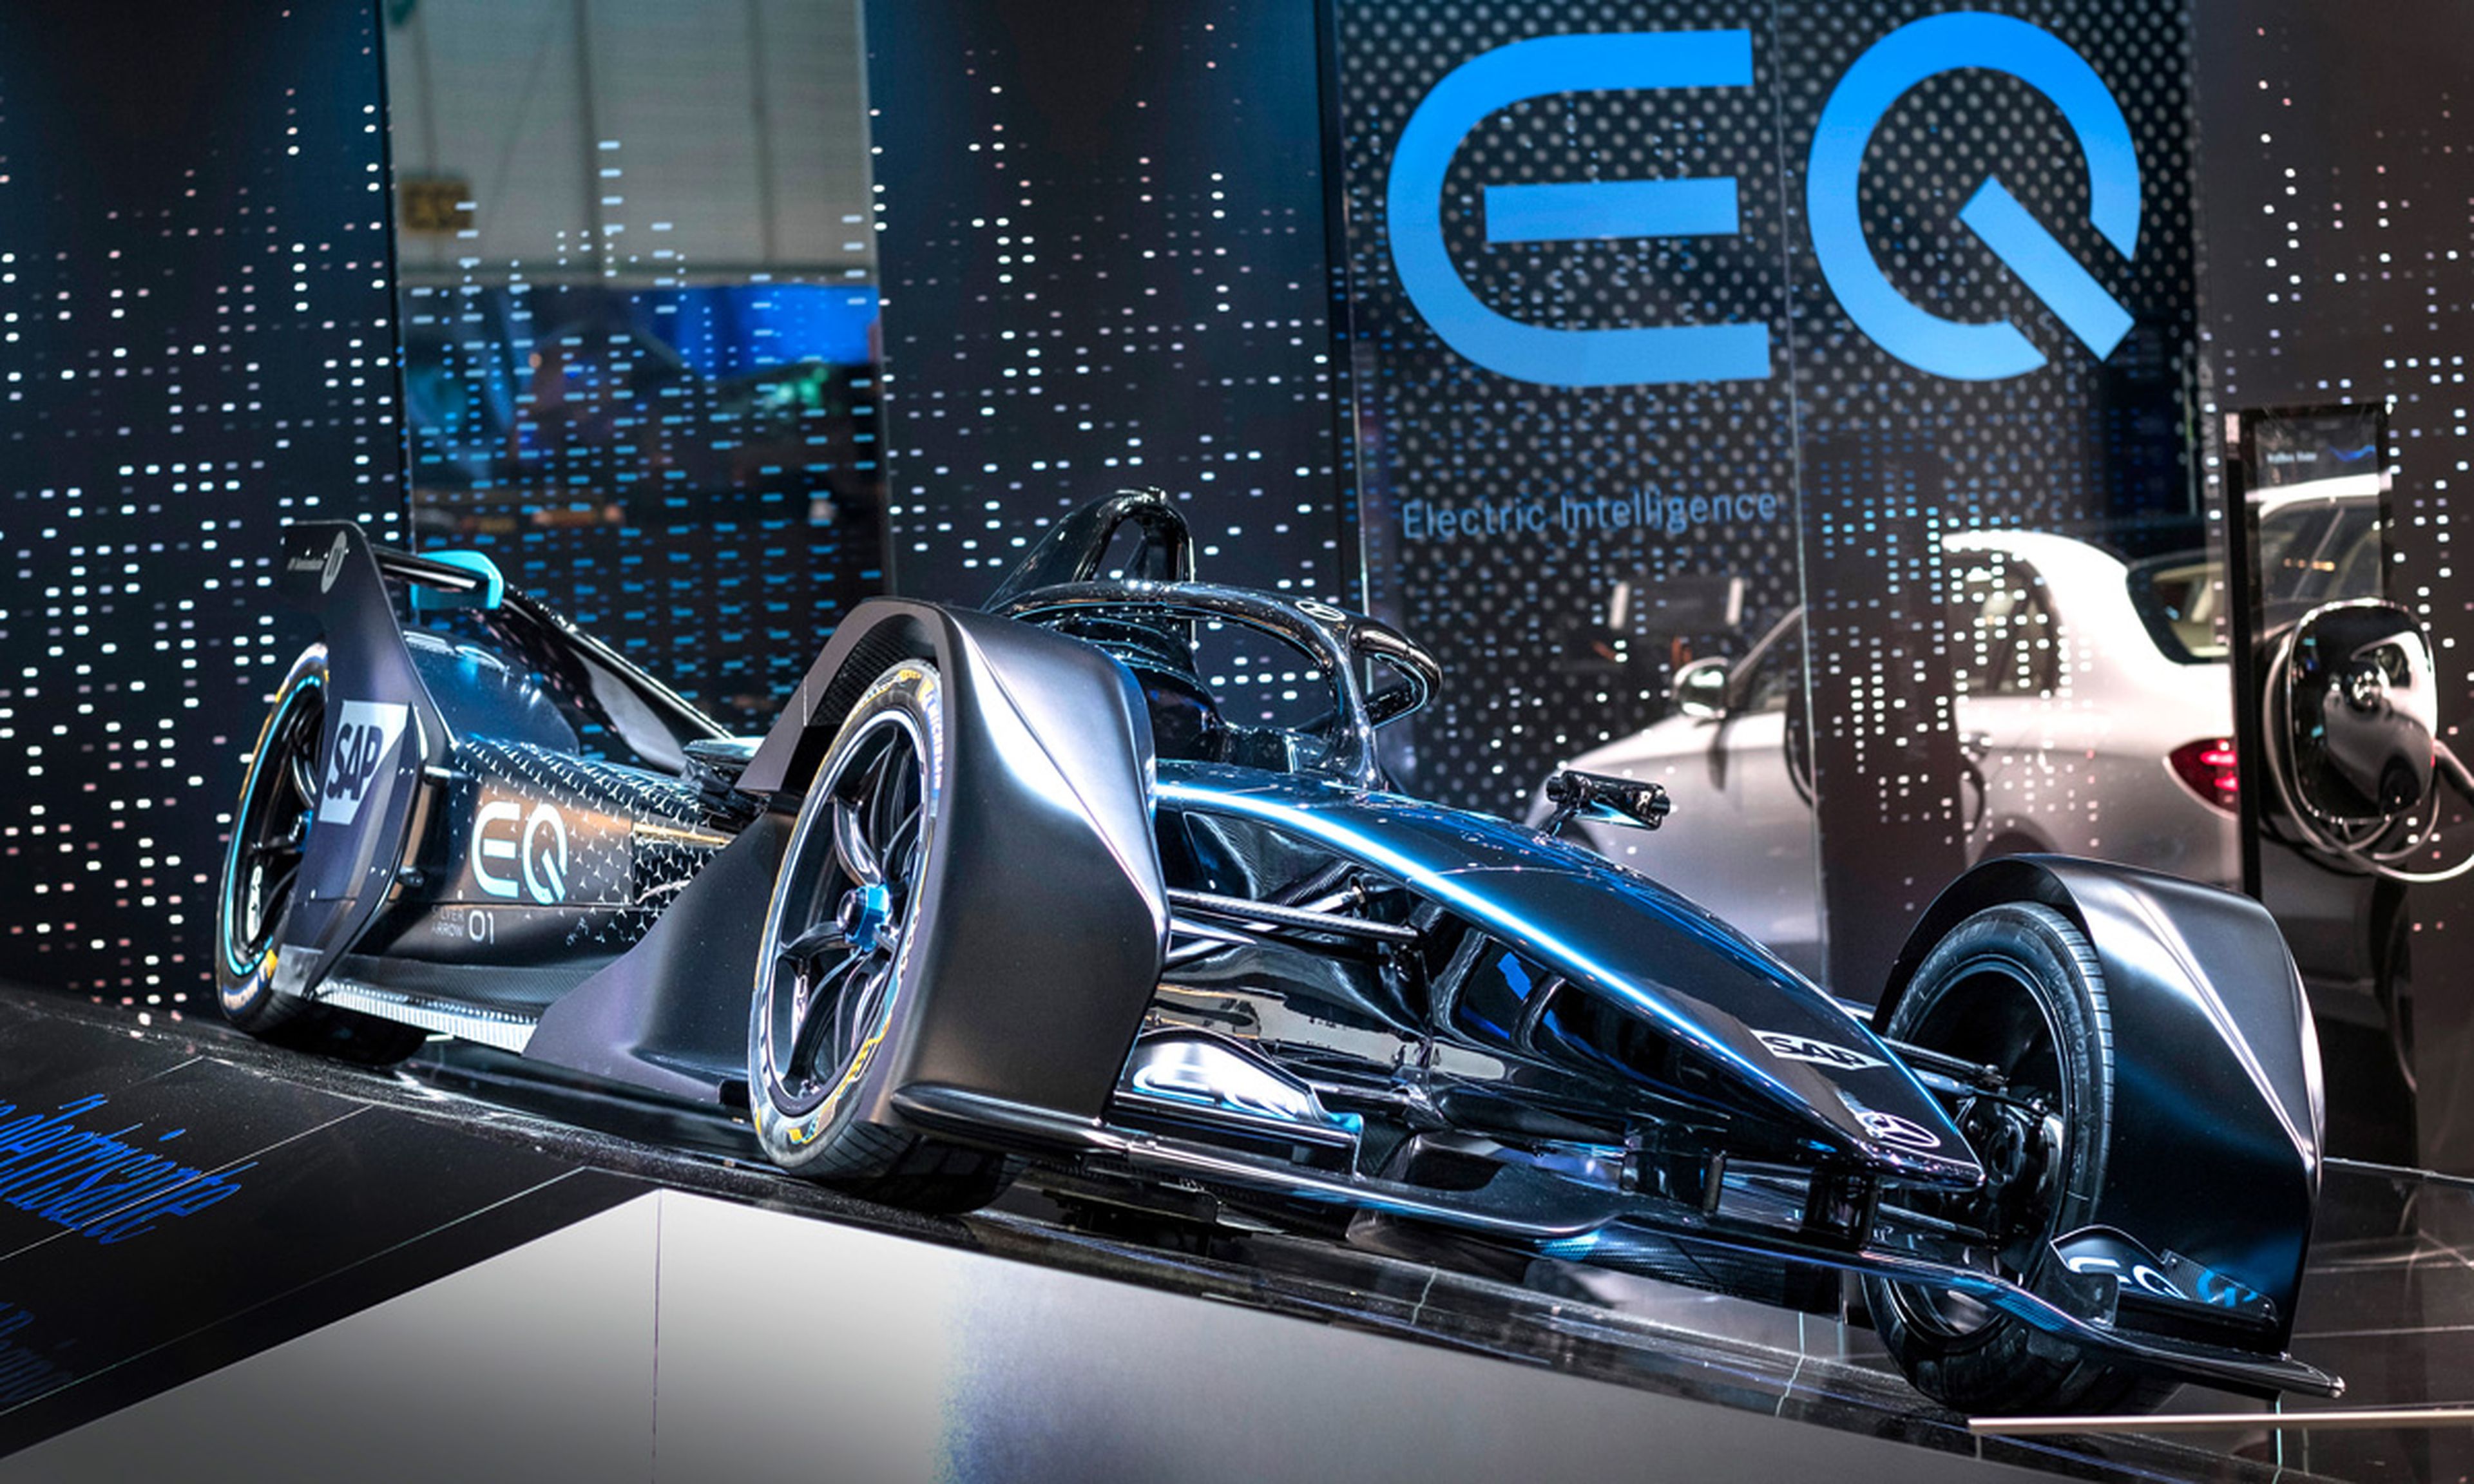 La Fórmula E ha permitido una mejora exponencial en el software y la electrónica de potencia de los coches eléctricos